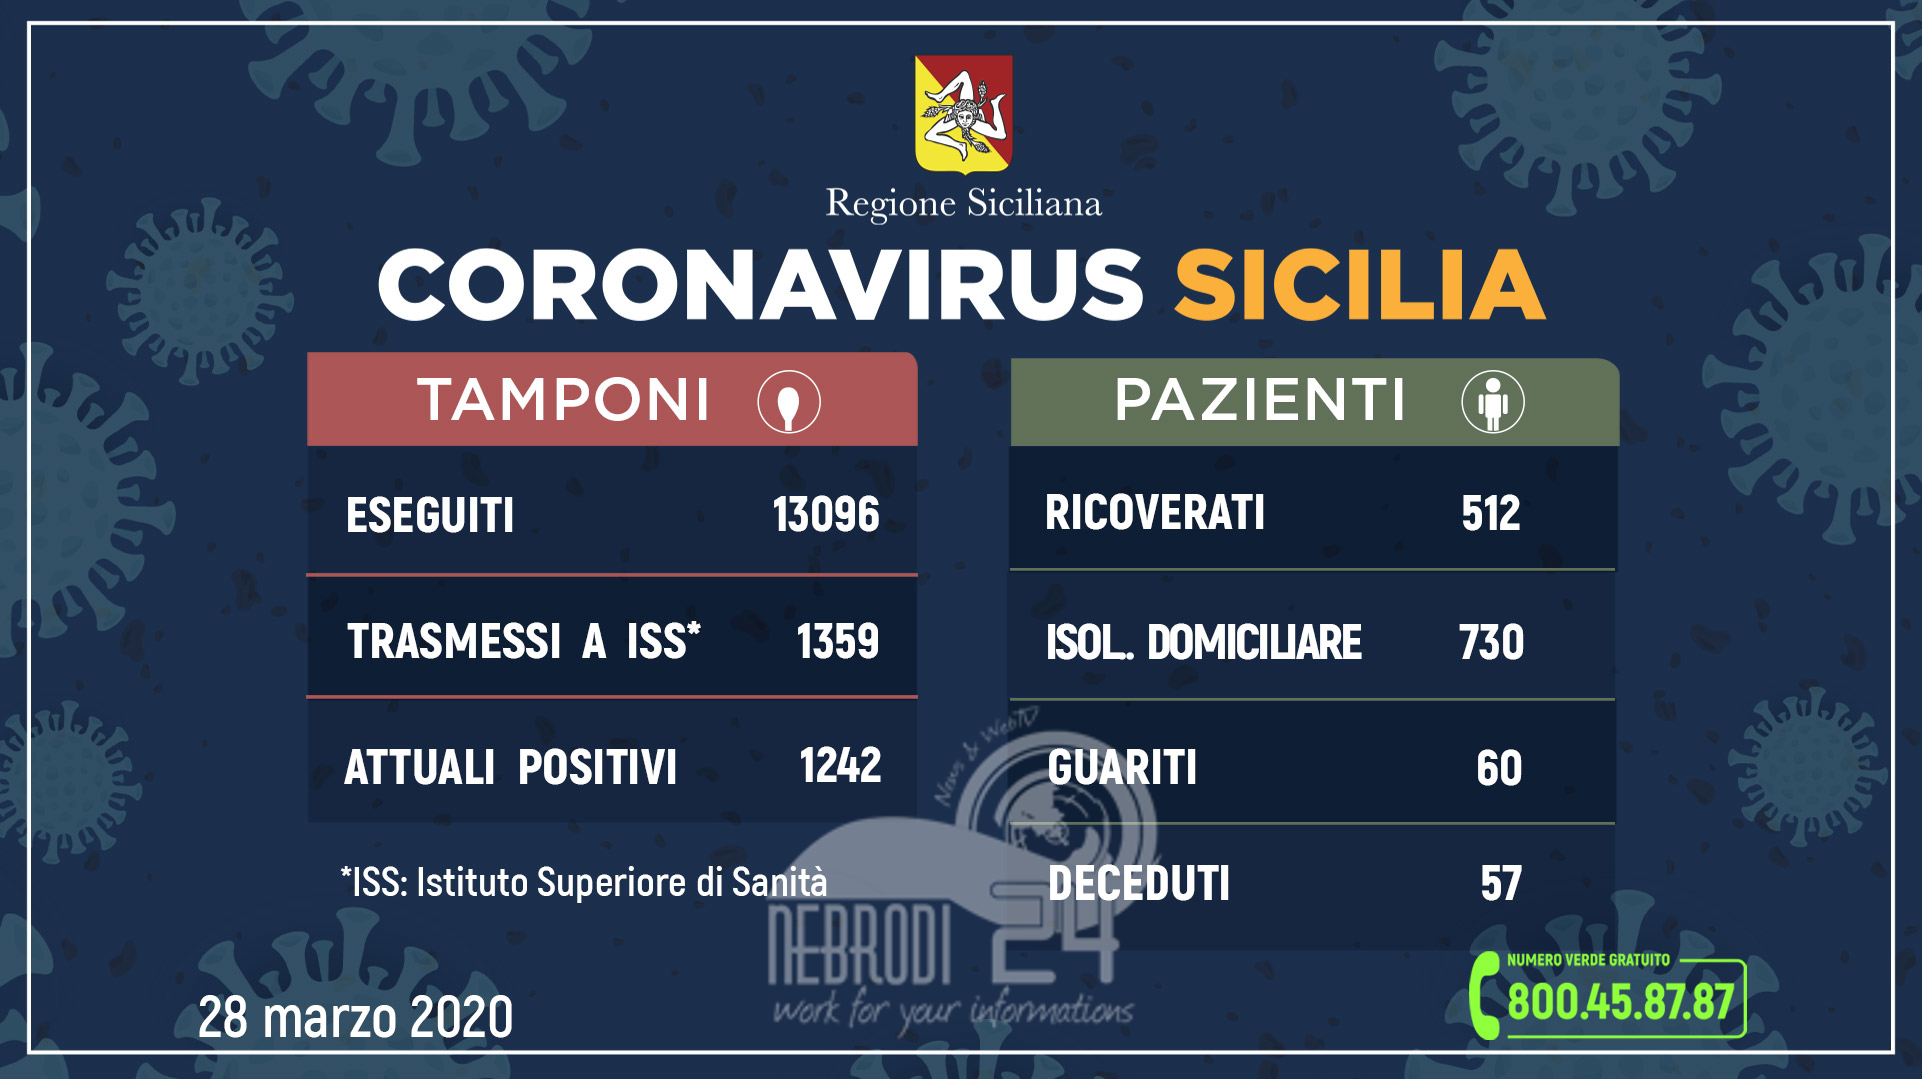 Coronavirus: l’aggiornamento in Sicilia, 1.242 attuali positivi e 60 guariti (+99 rispetto a ieri)